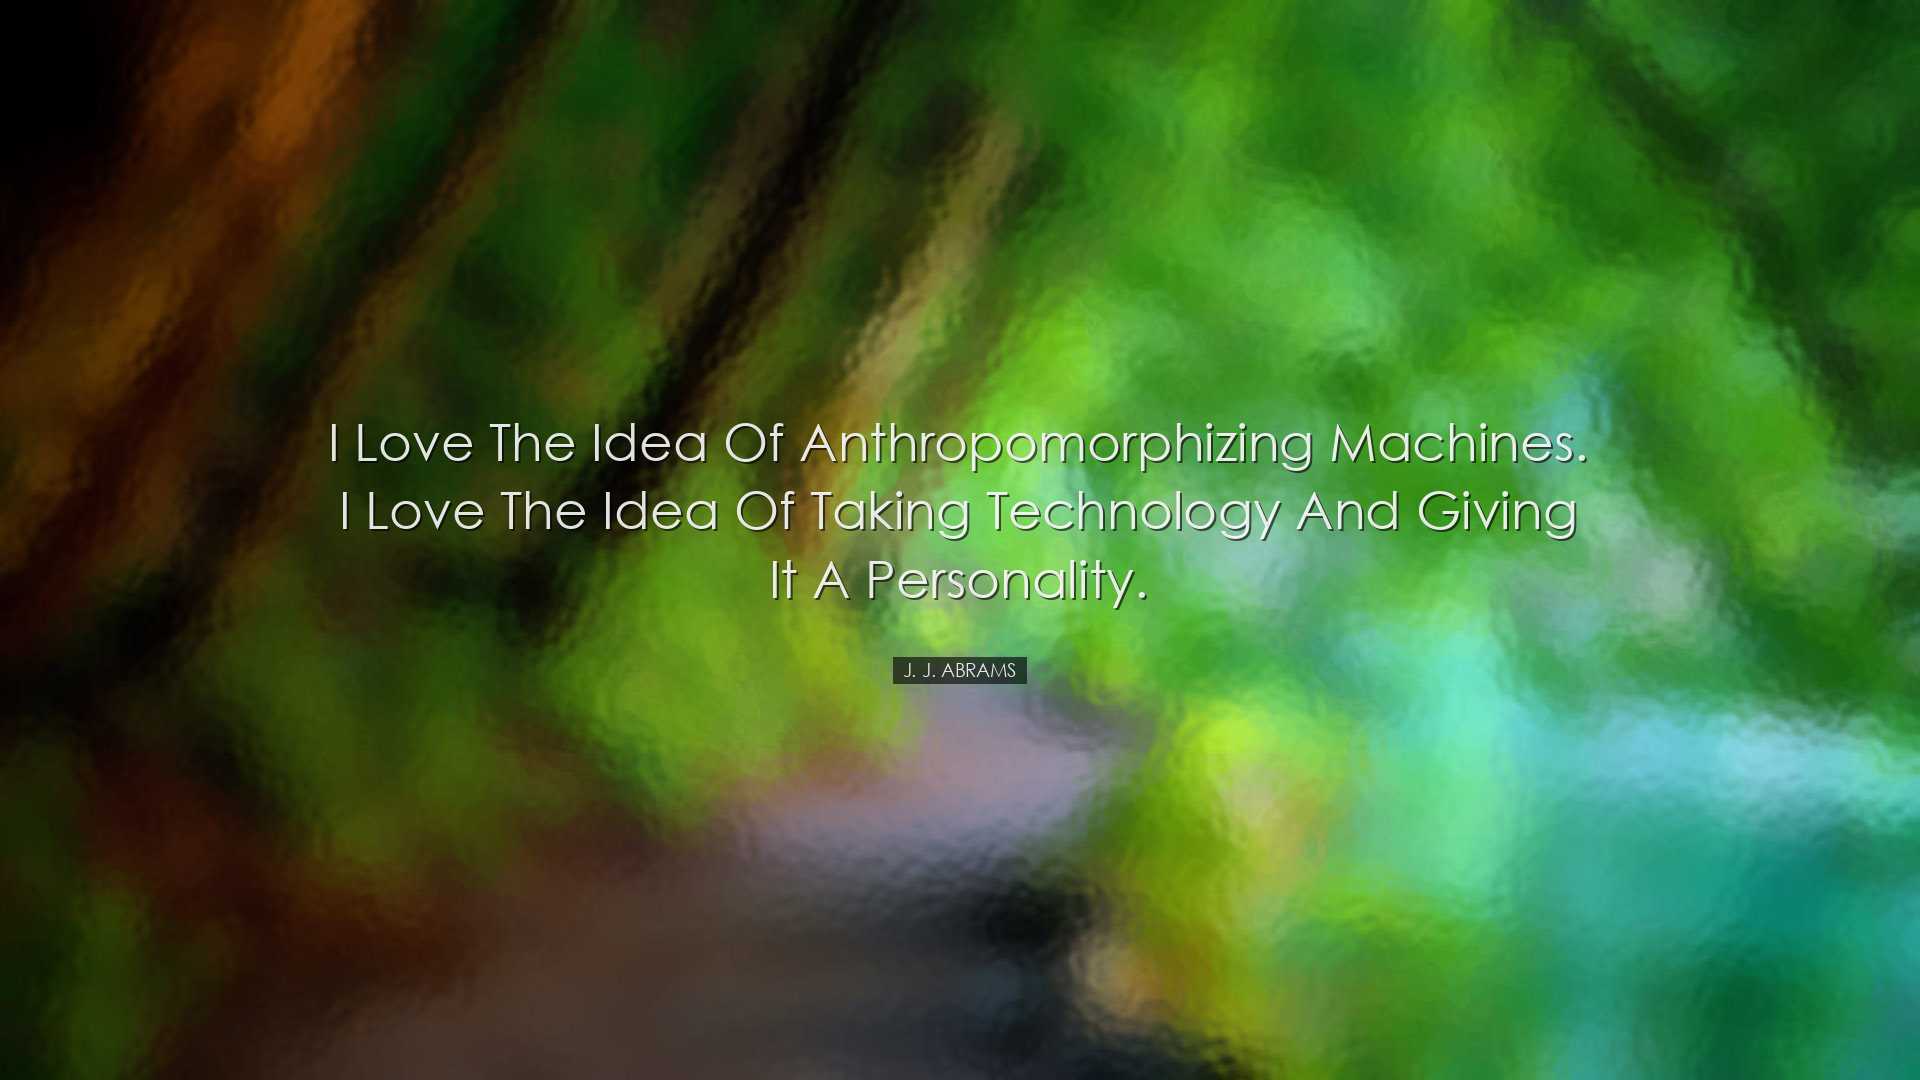 I love the idea of anthropomorphizing machines. I love the idea of